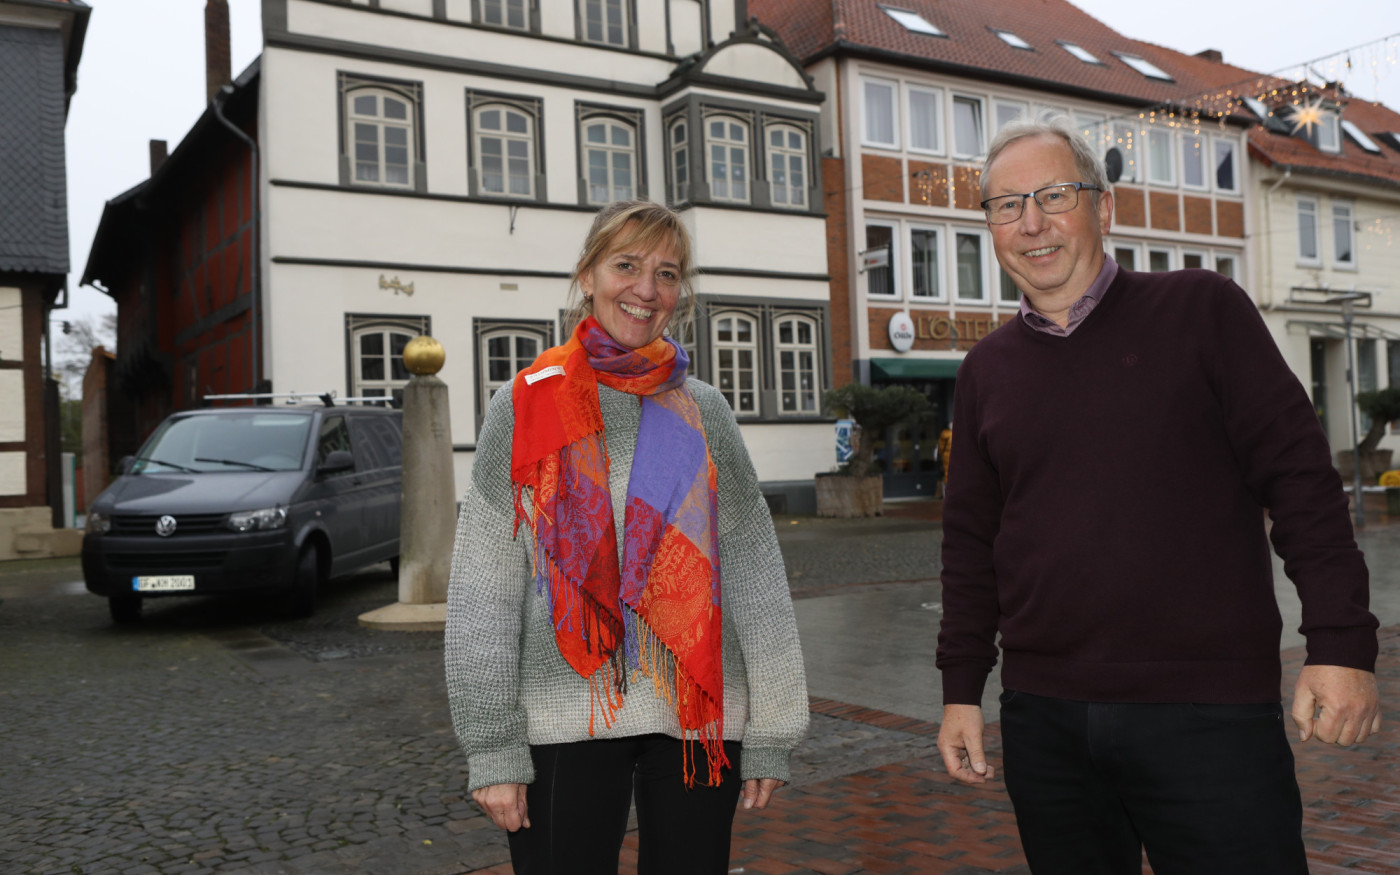 Wir wollen uns stärker als bisher um die Mitglieder kümmern - Der neue Vorsitzende Klaus Meister und Elga Eberhardt sprechen über die Zukunft des Gifhorner Kulturvereins